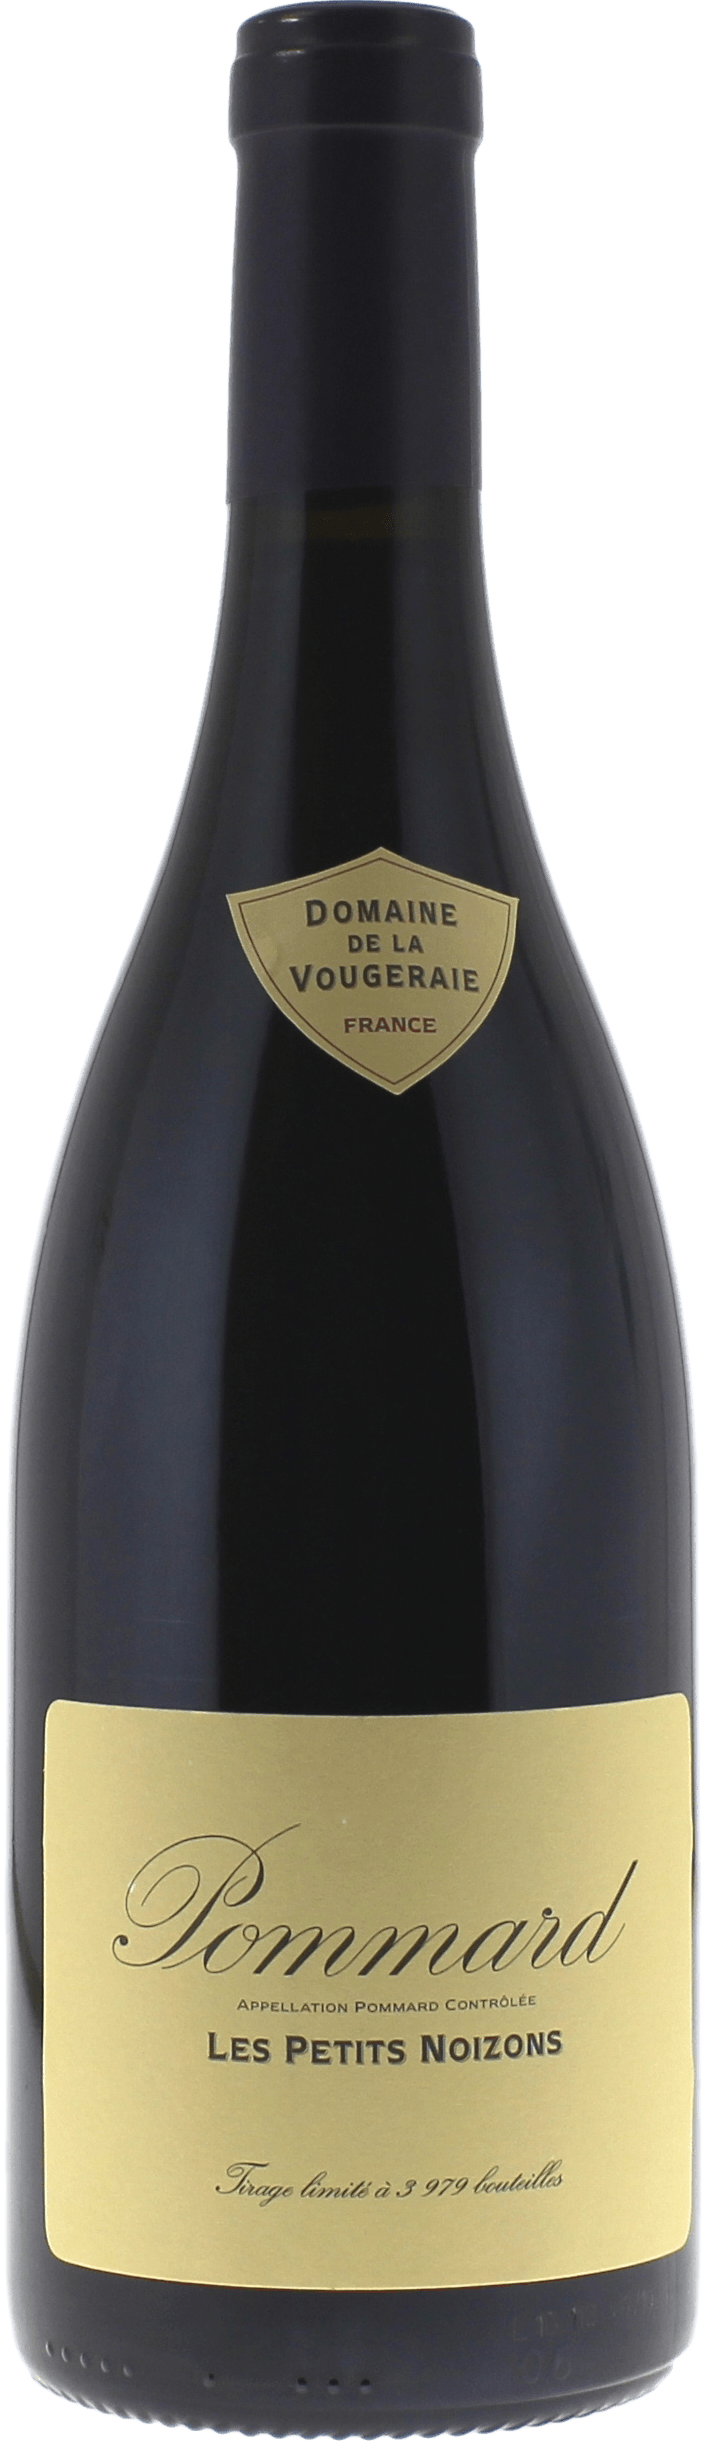 Pommard les petits noizons 2015 Domaine VOUGERAIE, Bourgogne rouge